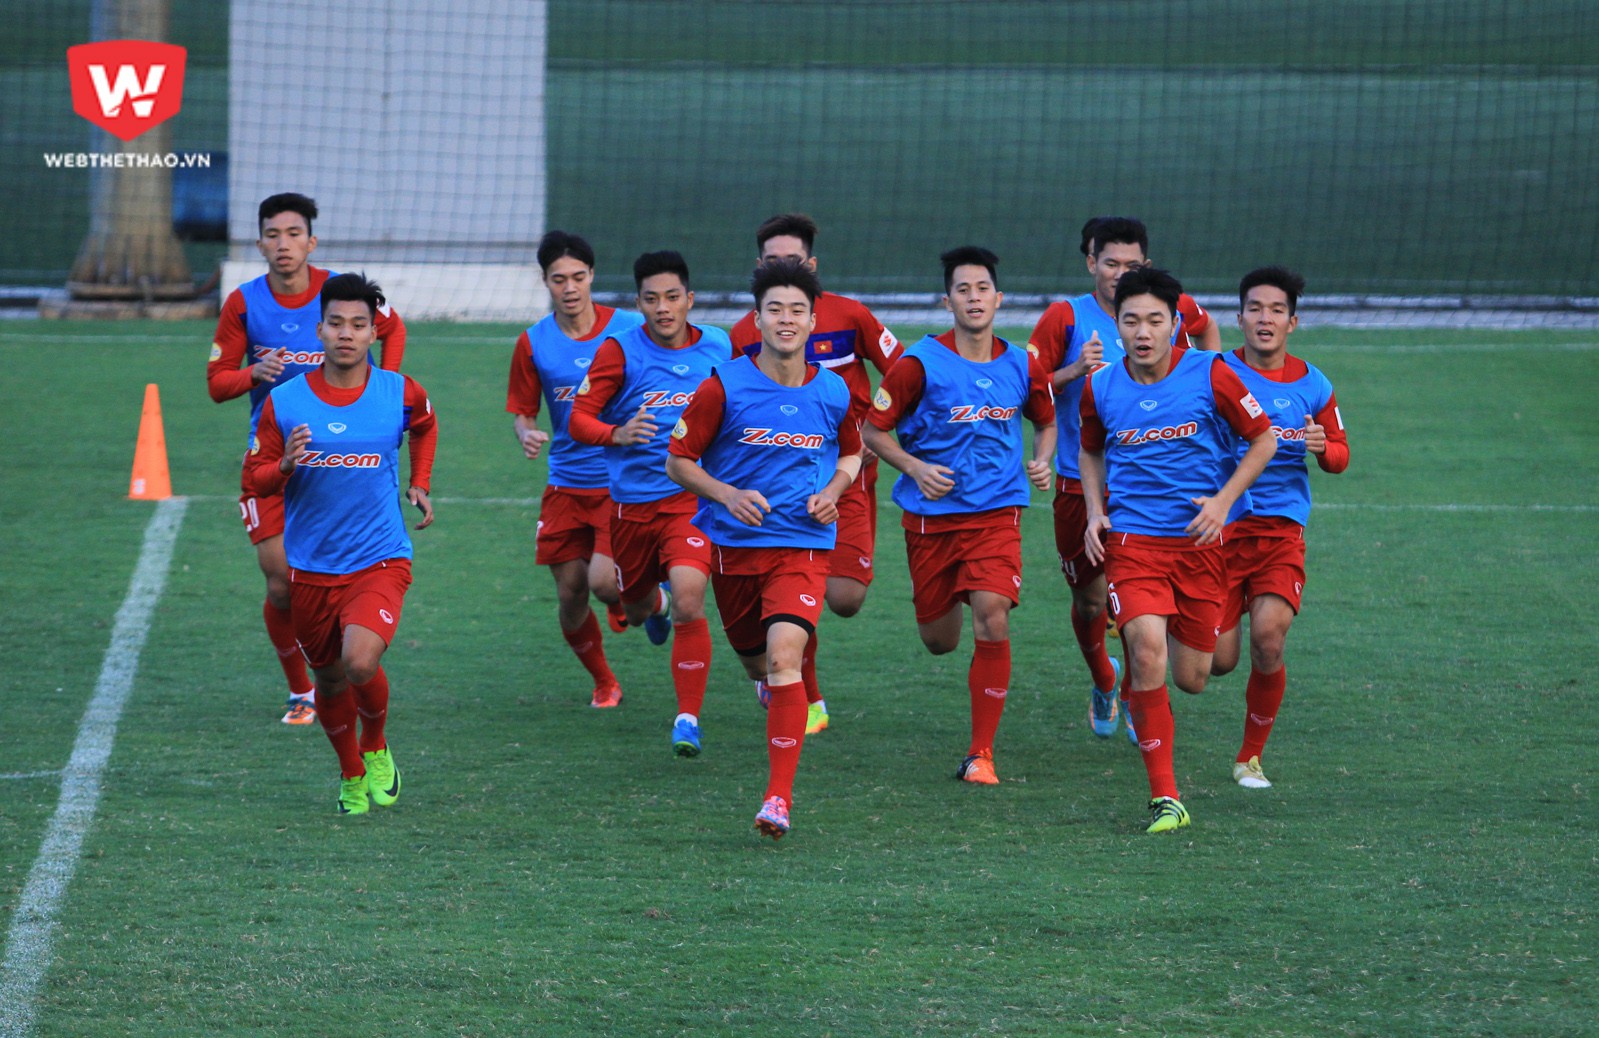 Đội tuyển U23 Việt Nam còn một buổi tập vào sáng mai (6/12) trước khi di chuyển sang Thái Lan vào ngày kia. HLV Park Hang Seo dự định mang theo 27 cầu thủ tham dự Giải M150. Ảnh: Trung Thu.